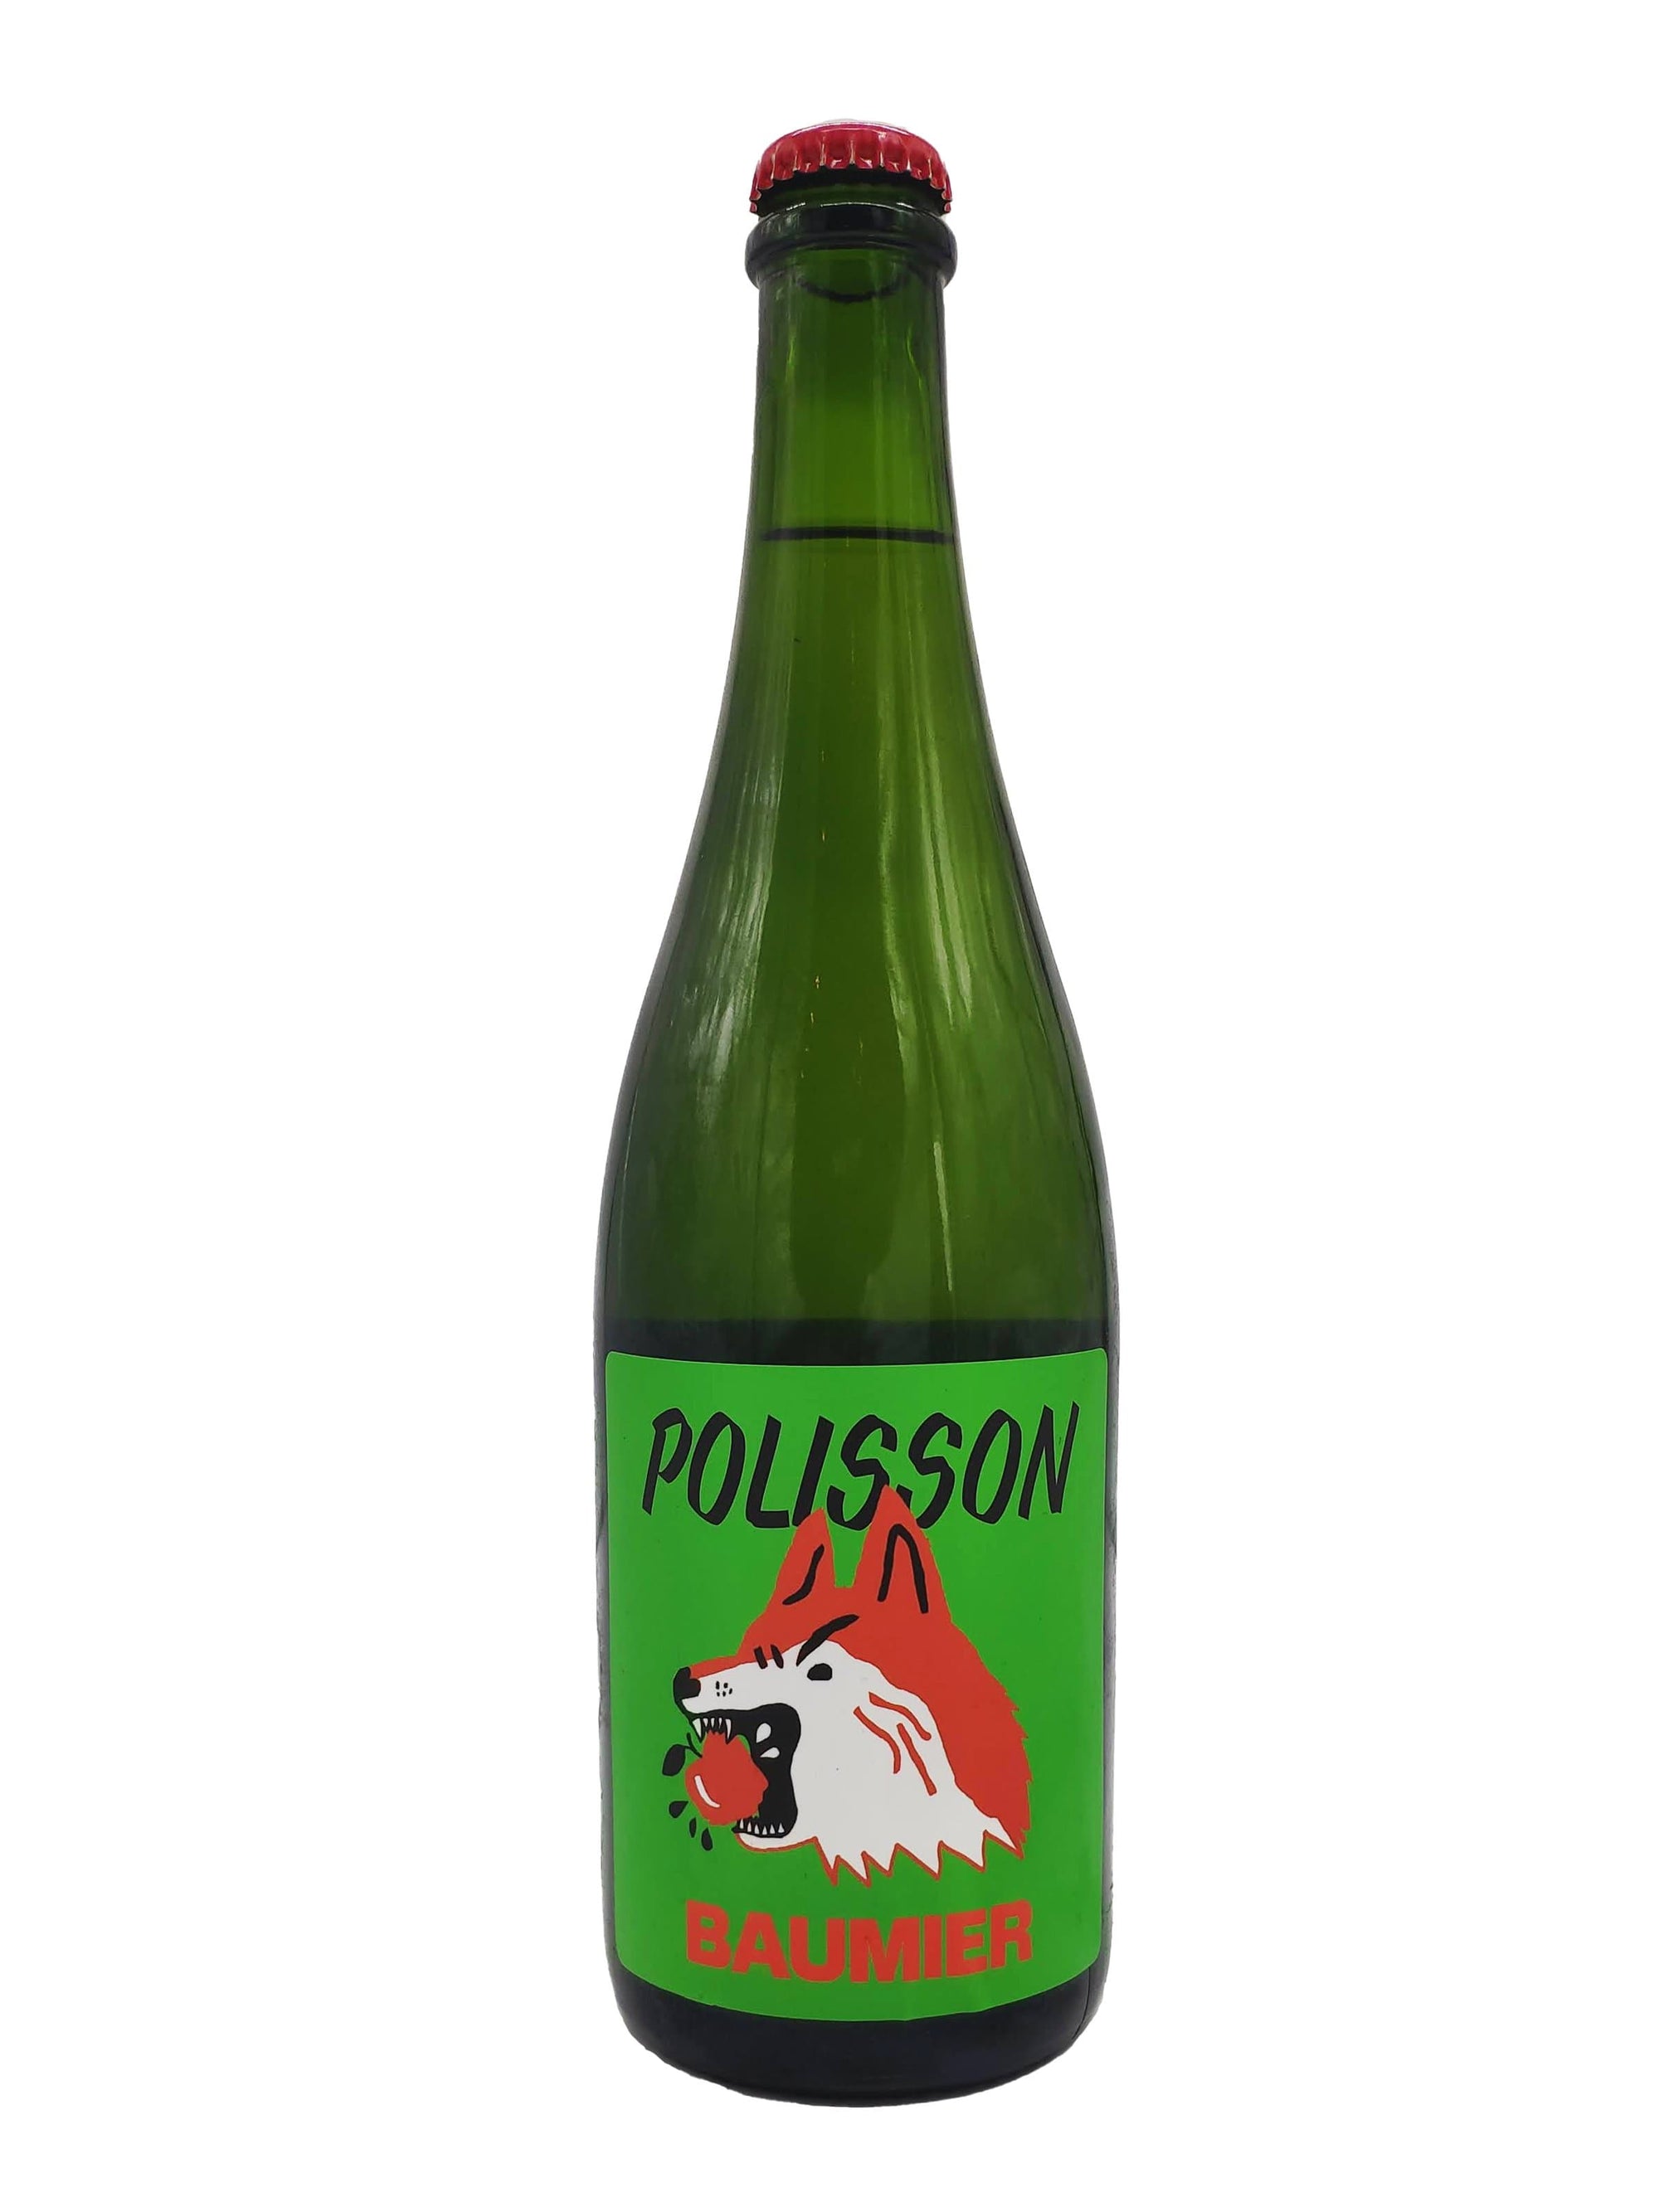 Baumier - Cidre mousseux des Cidres Polisson